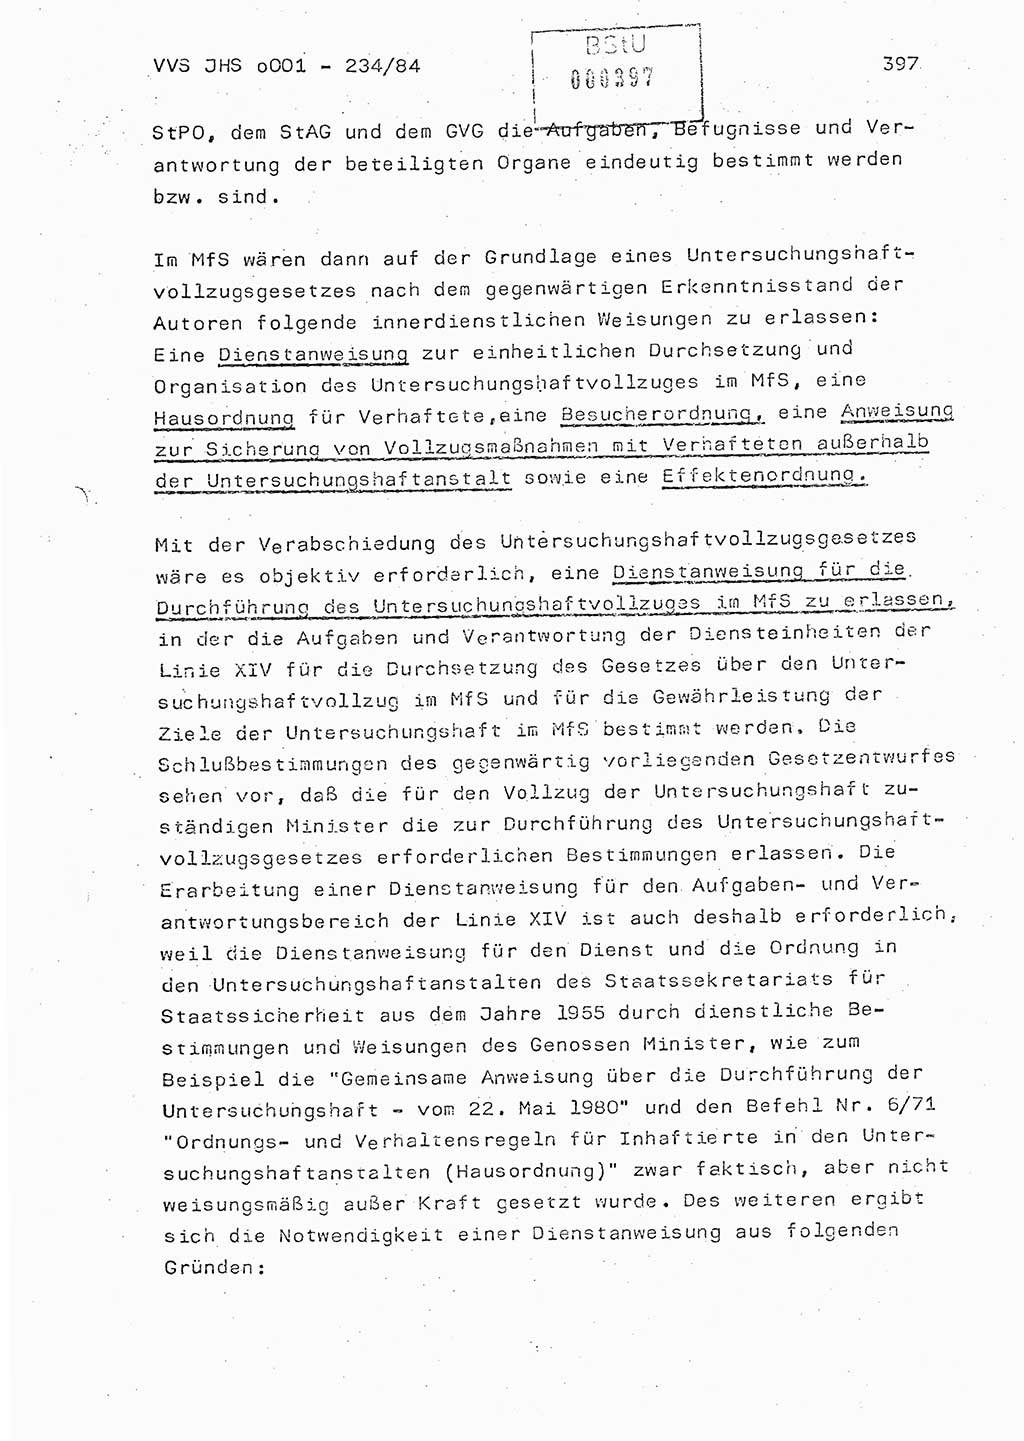 Dissertation Oberst Siegfried Rataizick (Abt. ⅩⅣ), Oberstleutnant Volkmar Heinz (Abt. ⅩⅣ), Oberstleutnant Werner Stein (HA Ⅸ), Hauptmann Heinz Conrad (JHS), Ministerium für Staatssicherheit (MfS) [Deutsche Demokratische Republik (DDR)], Juristische Hochschule (JHS), Vertrauliche Verschlußsache (VVS) o001-234/84, Potsdam 1984, Seite 397 (Diss. MfS DDR JHS VVS o001-234/84 1984, S. 397)